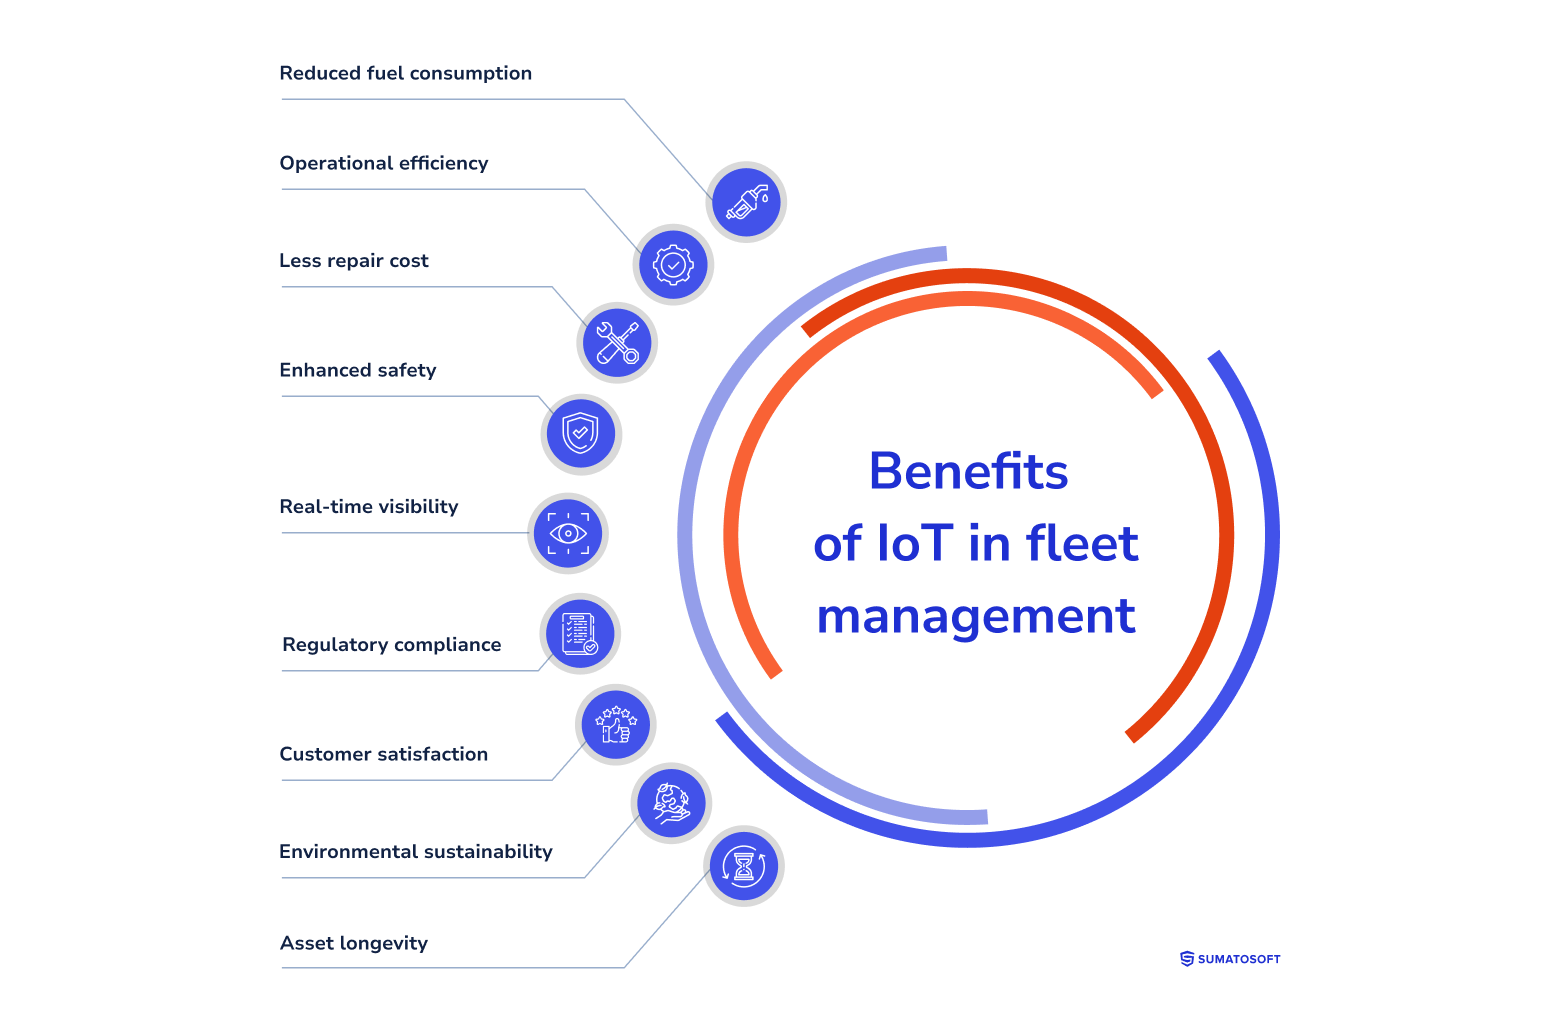 Benefits of IoT in fleet management